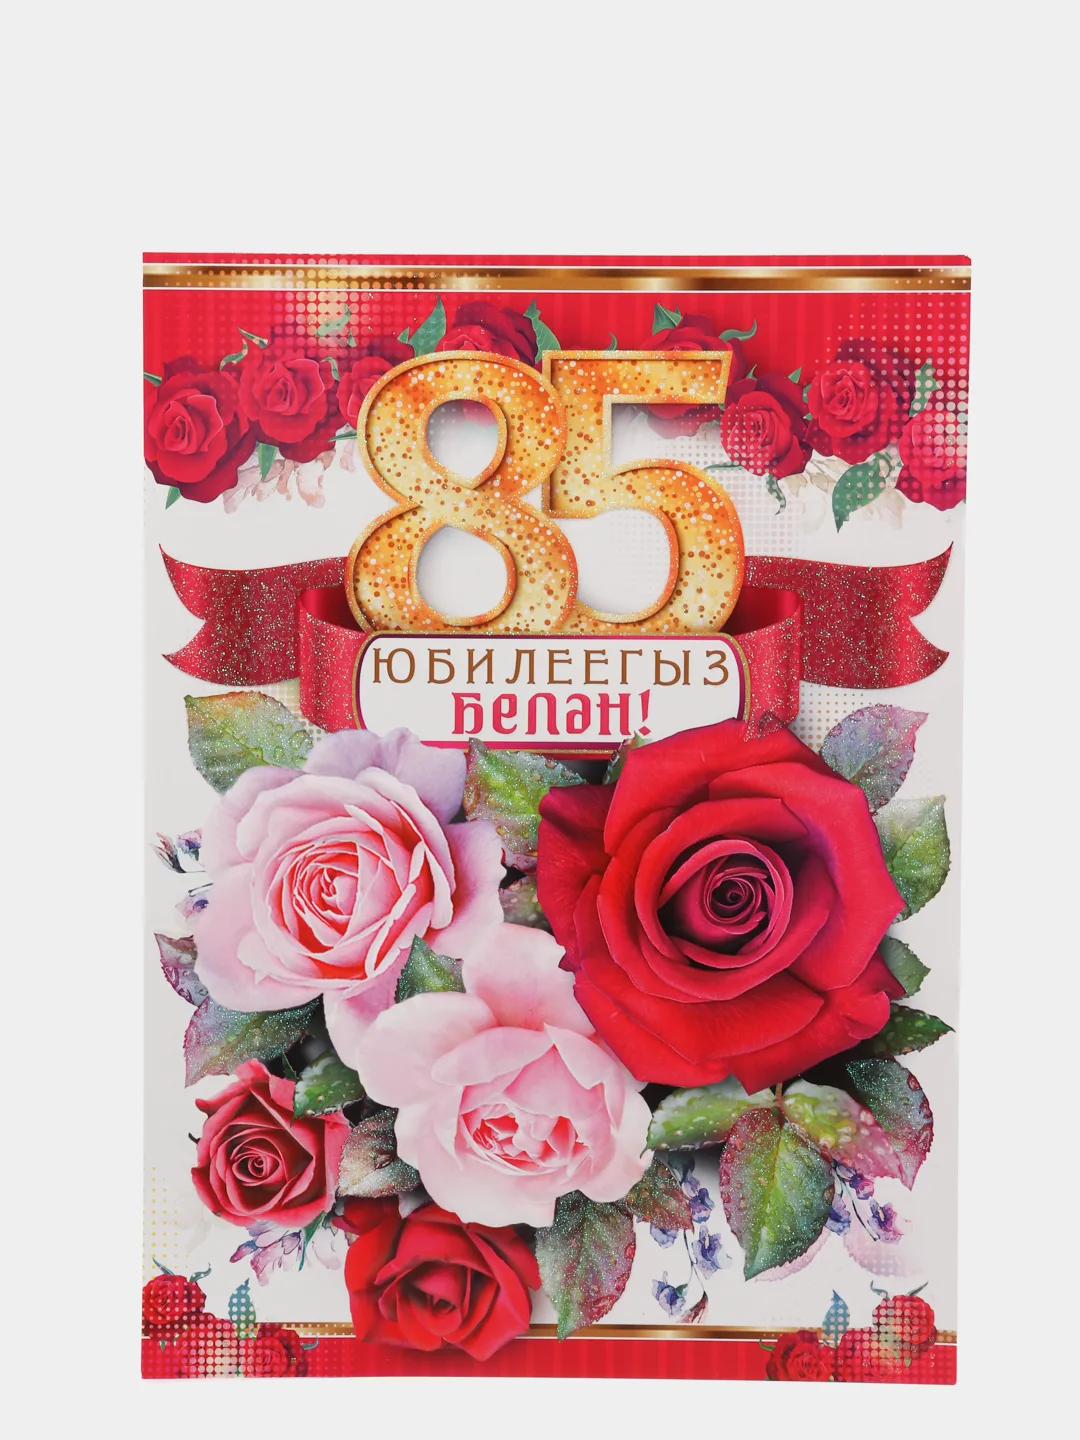 Фото Поздравления с днем рождения маме на татарском языке #44